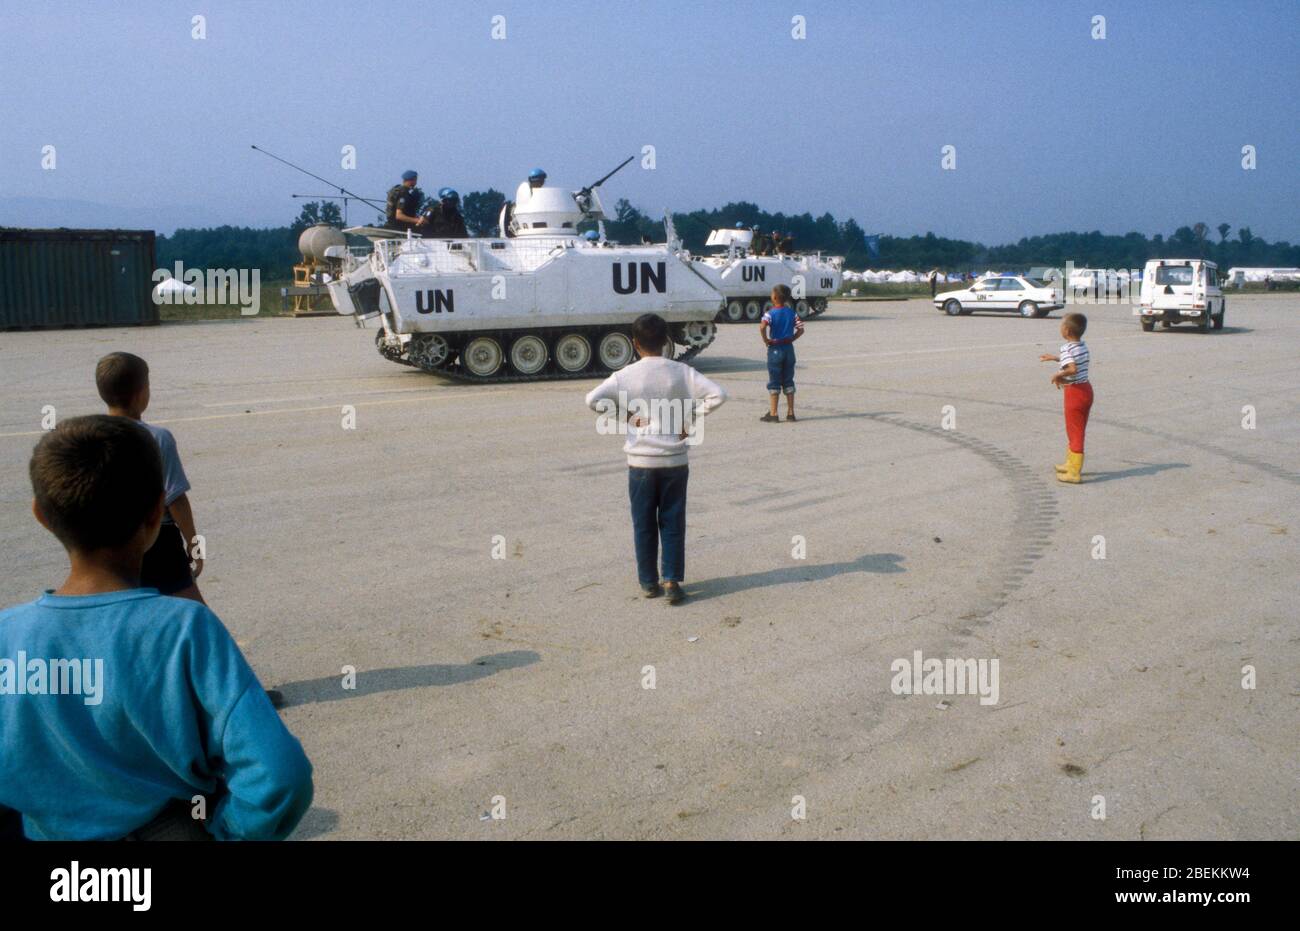 1995 Tuzla, Bosnien - UN-Panzer zum Schutz des Flugplatzes Tuzla für bosnische Muslime, die vor dem Massaker von Srebrenica während des Bosnienkrieges fliehen Stockfoto